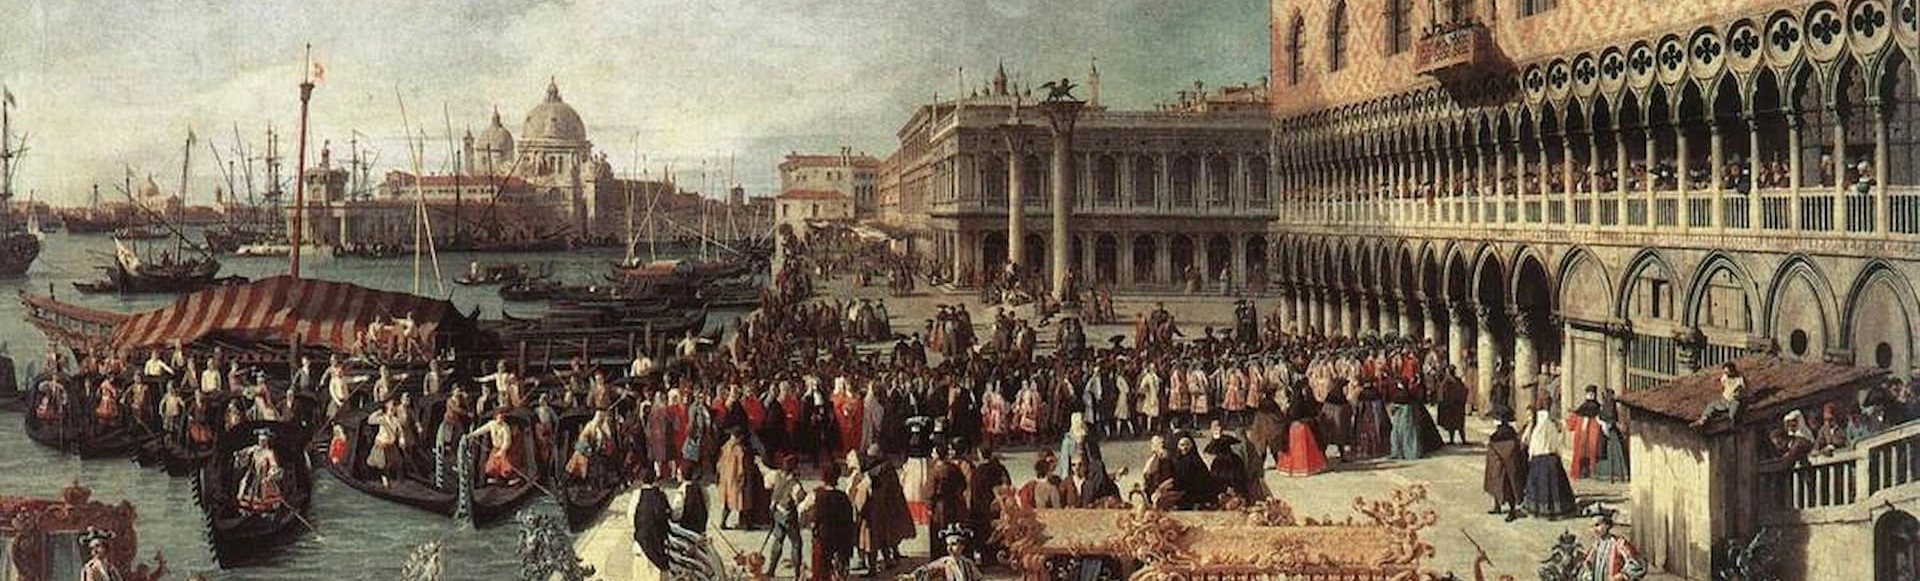 История музыкальных стилей: Вивальди и венецианская опера